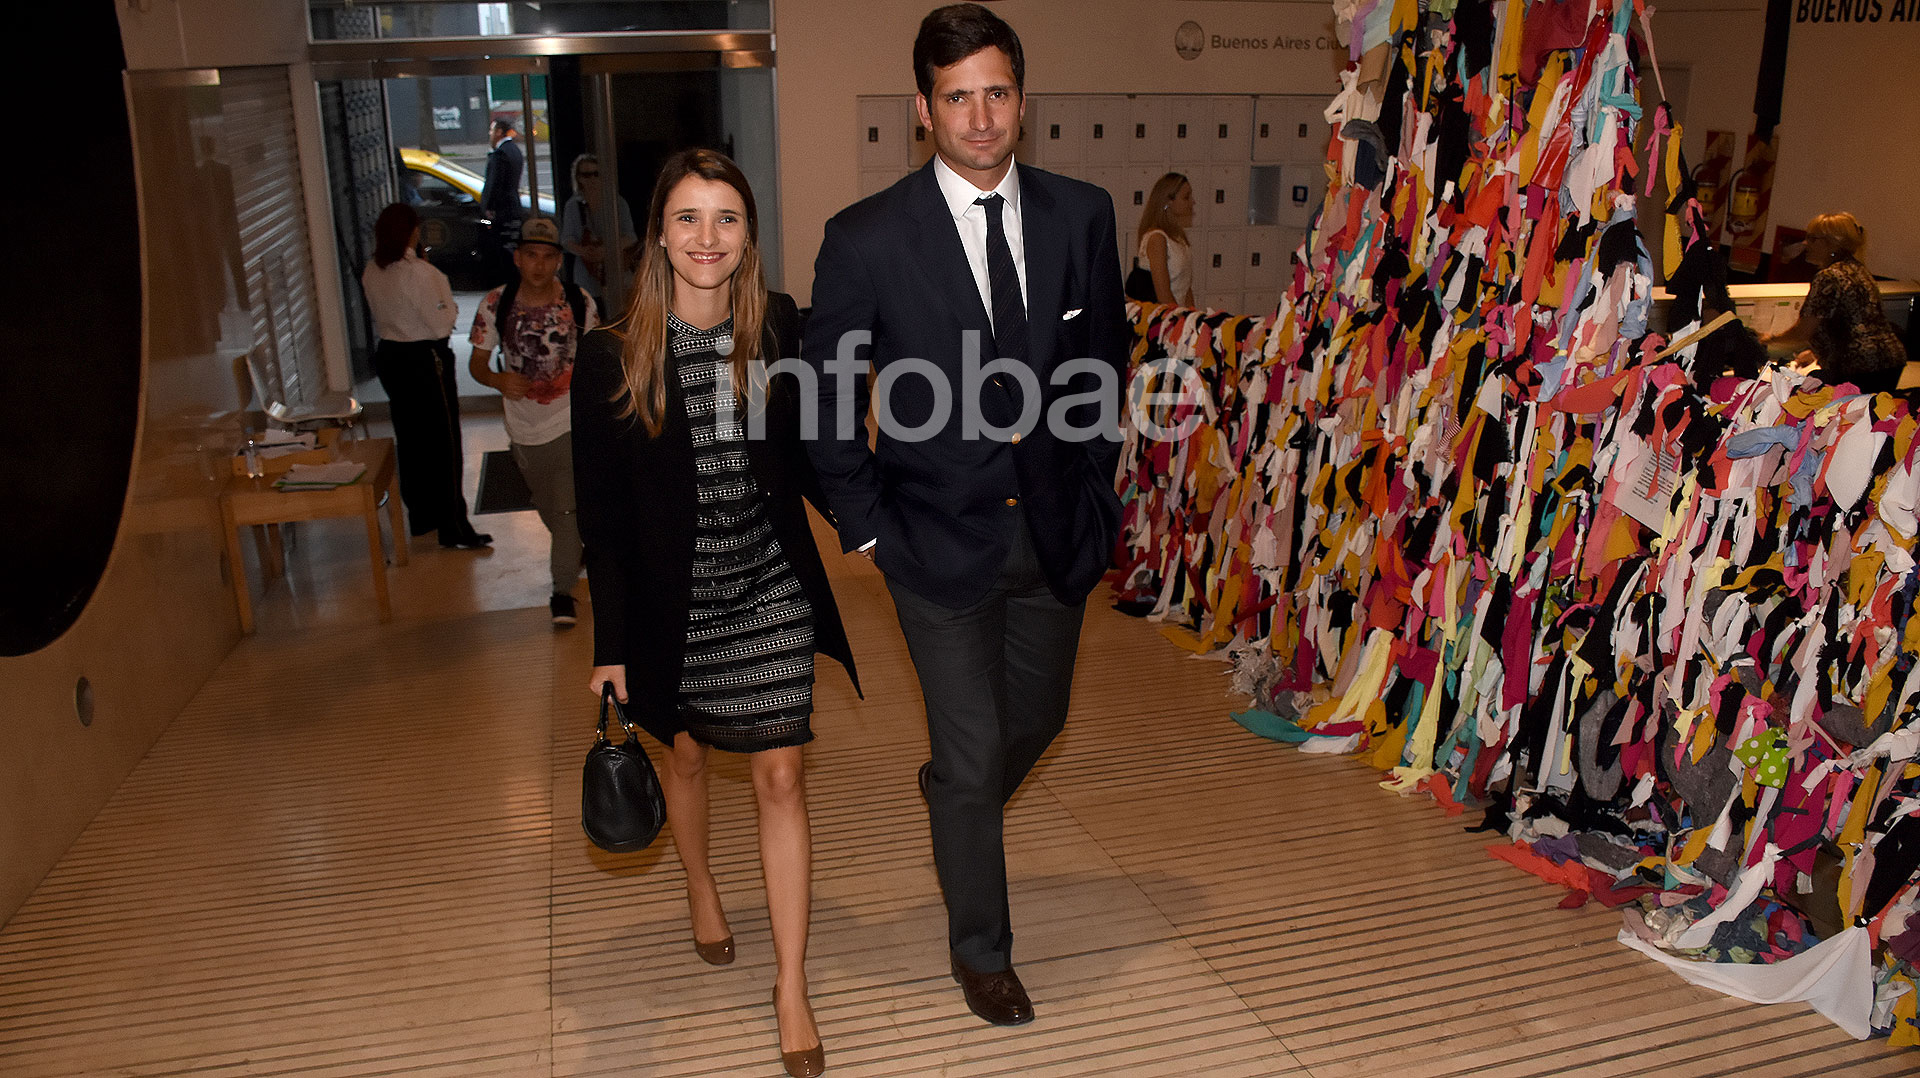 Su hijo, Juan Neuss, y su mujer Coni Uriarte entrando al Museo de Arte Moderno (2017)